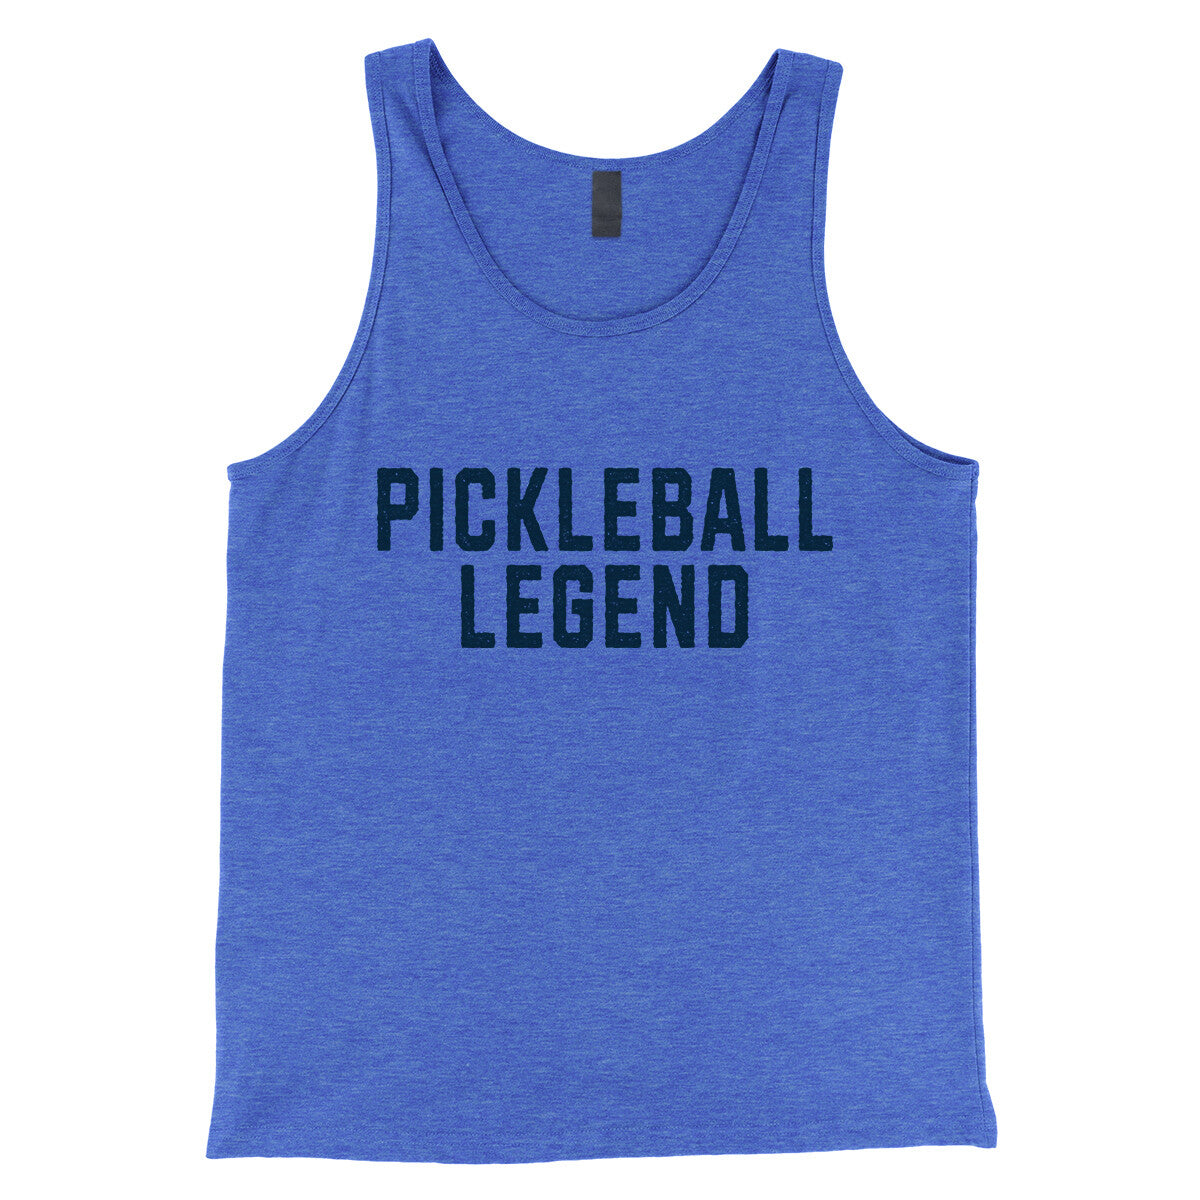 Pickleball Legend in True Royal TriBlend Color